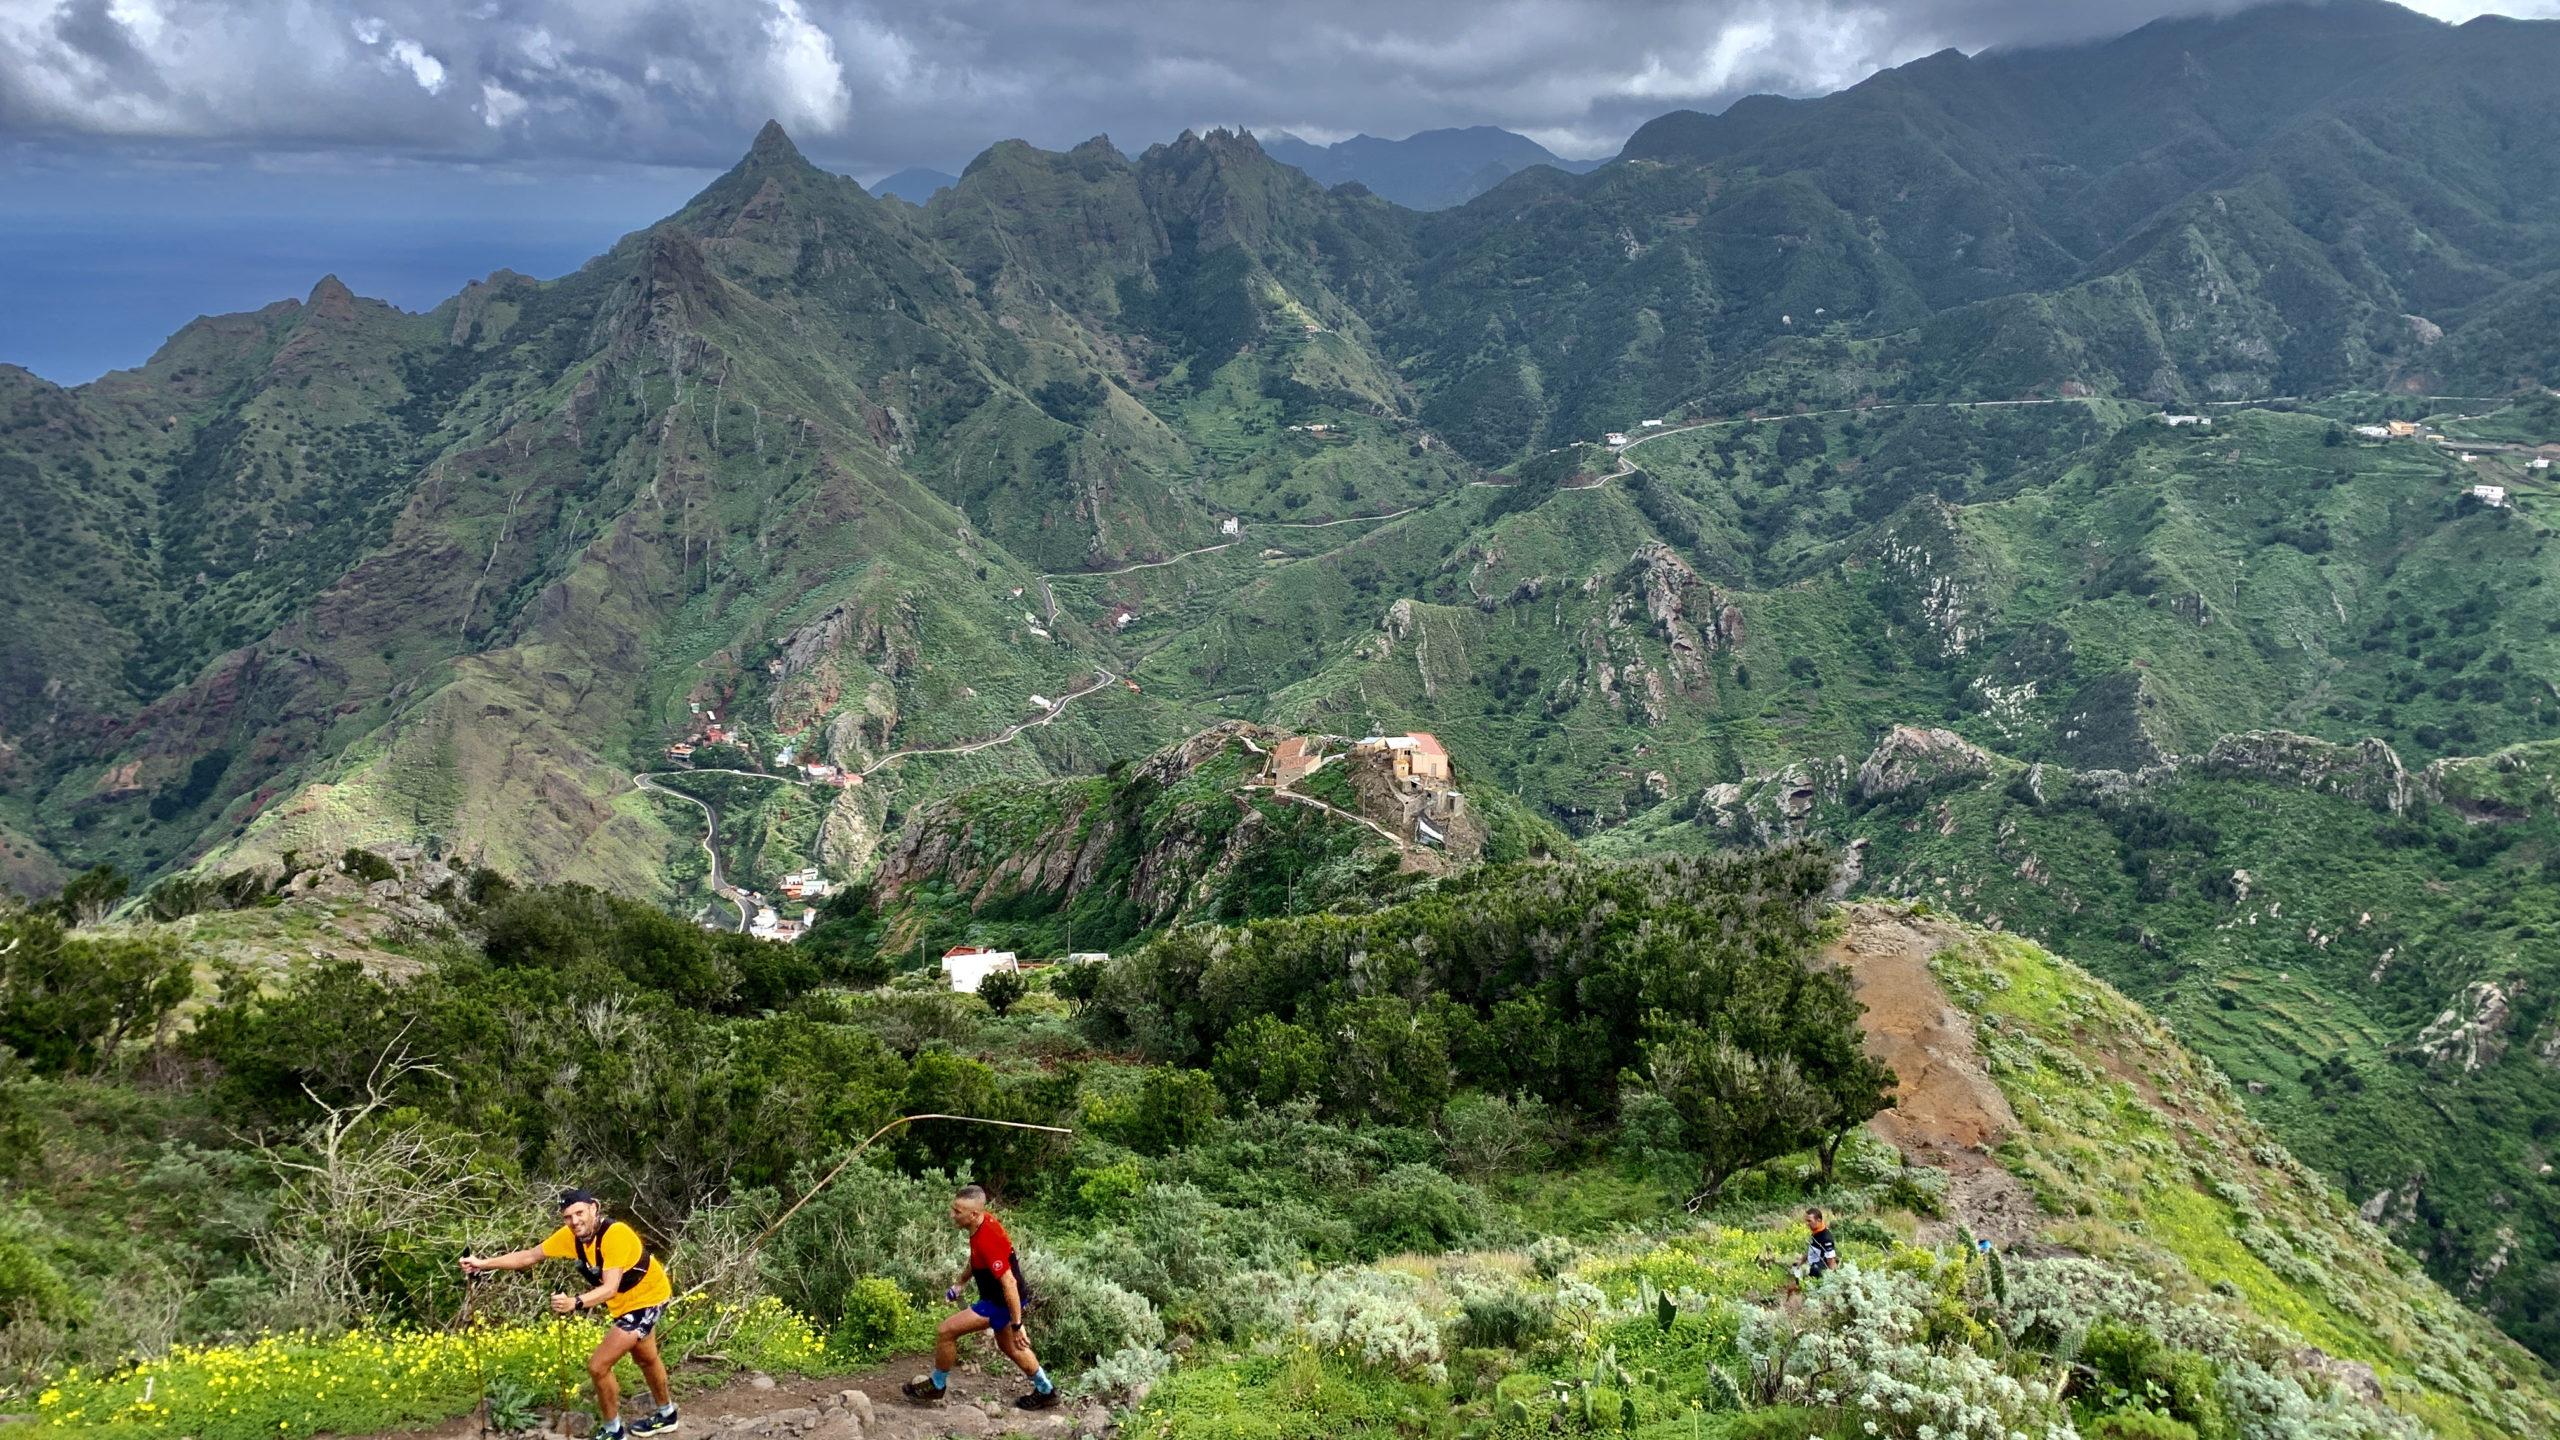 zwei sportliche Wanderer in bunter Kleidung gehen einen Bergpfad hinauf. Im Hintergrund das zerklüftete Bergmassiv des Anaga Gebirges auf Teneriffa